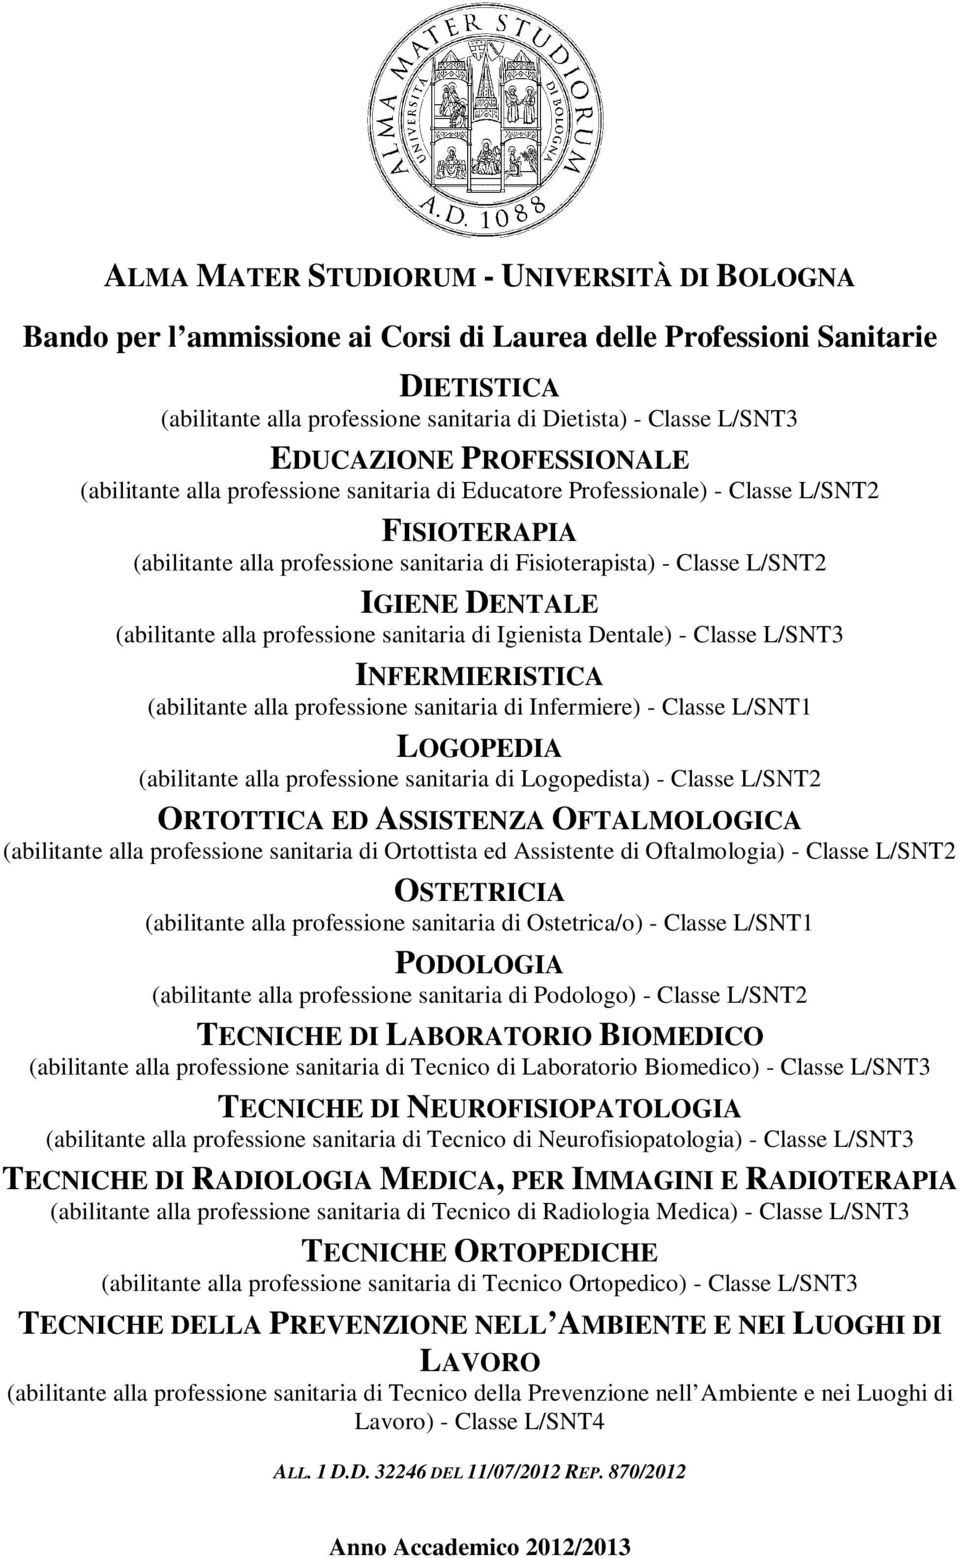 DENTALE (abilitante alla professione sanitaria di Igienista Dentale) - Classe L/SNT3 INFERMIERISTICA (abilitante alla professione sanitaria di Infermiere) - Classe L/SNT1 LOGOPEDIA (abilitante alla